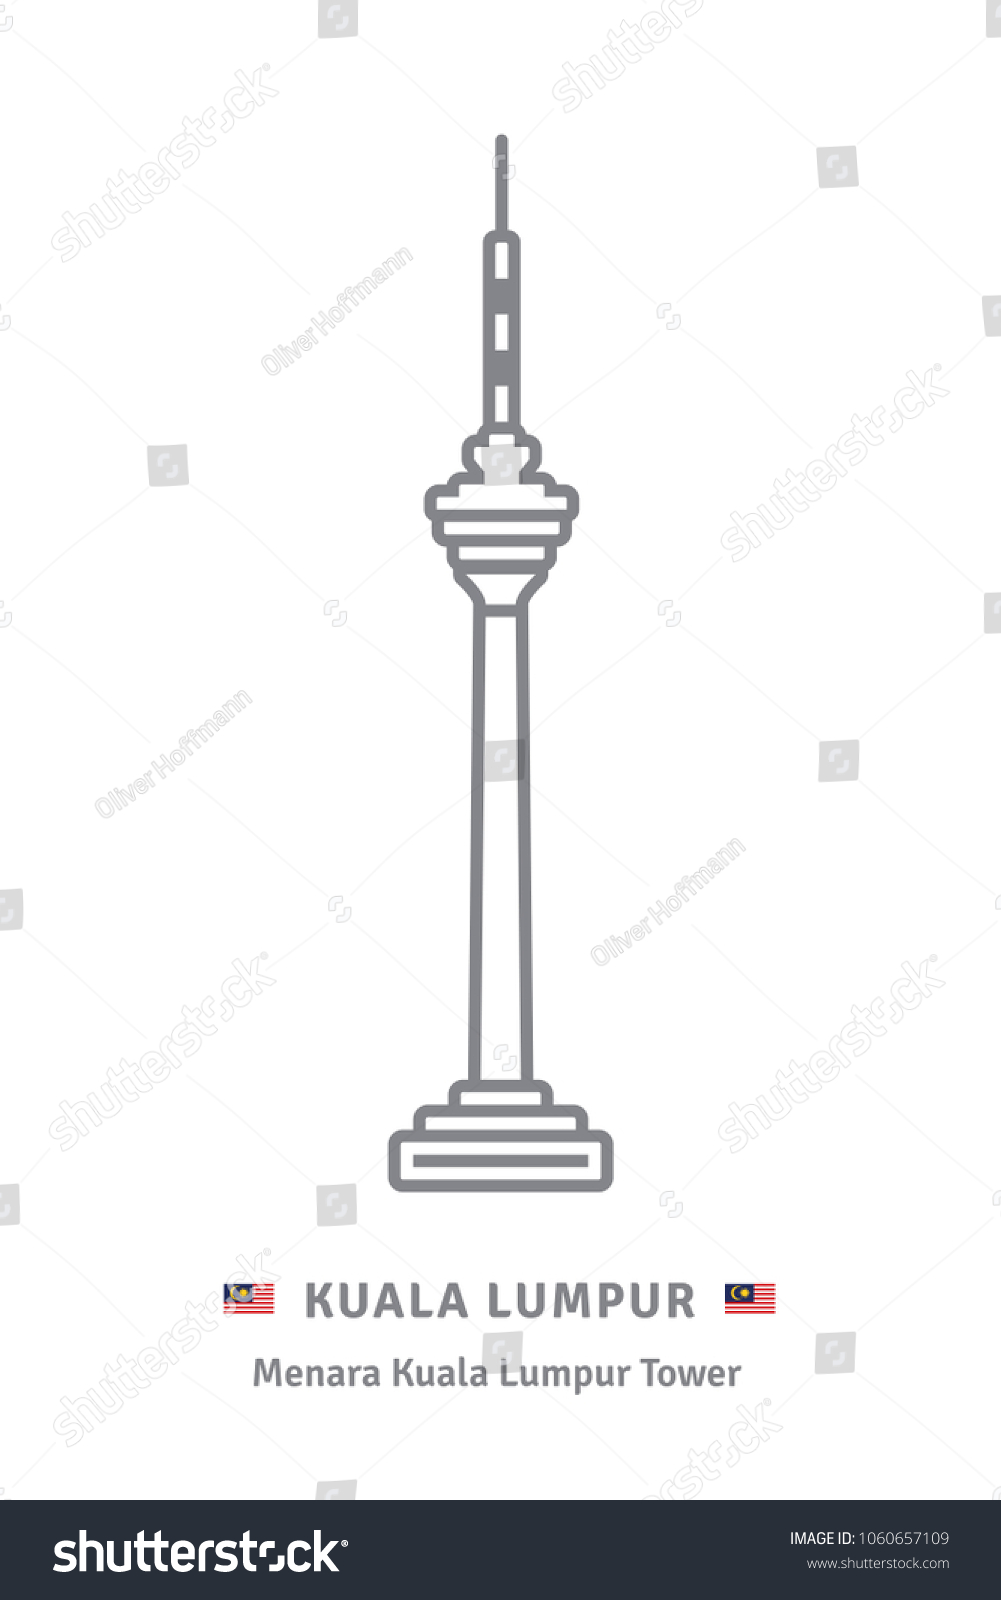 Kuala lumpur menara Menara Kuala